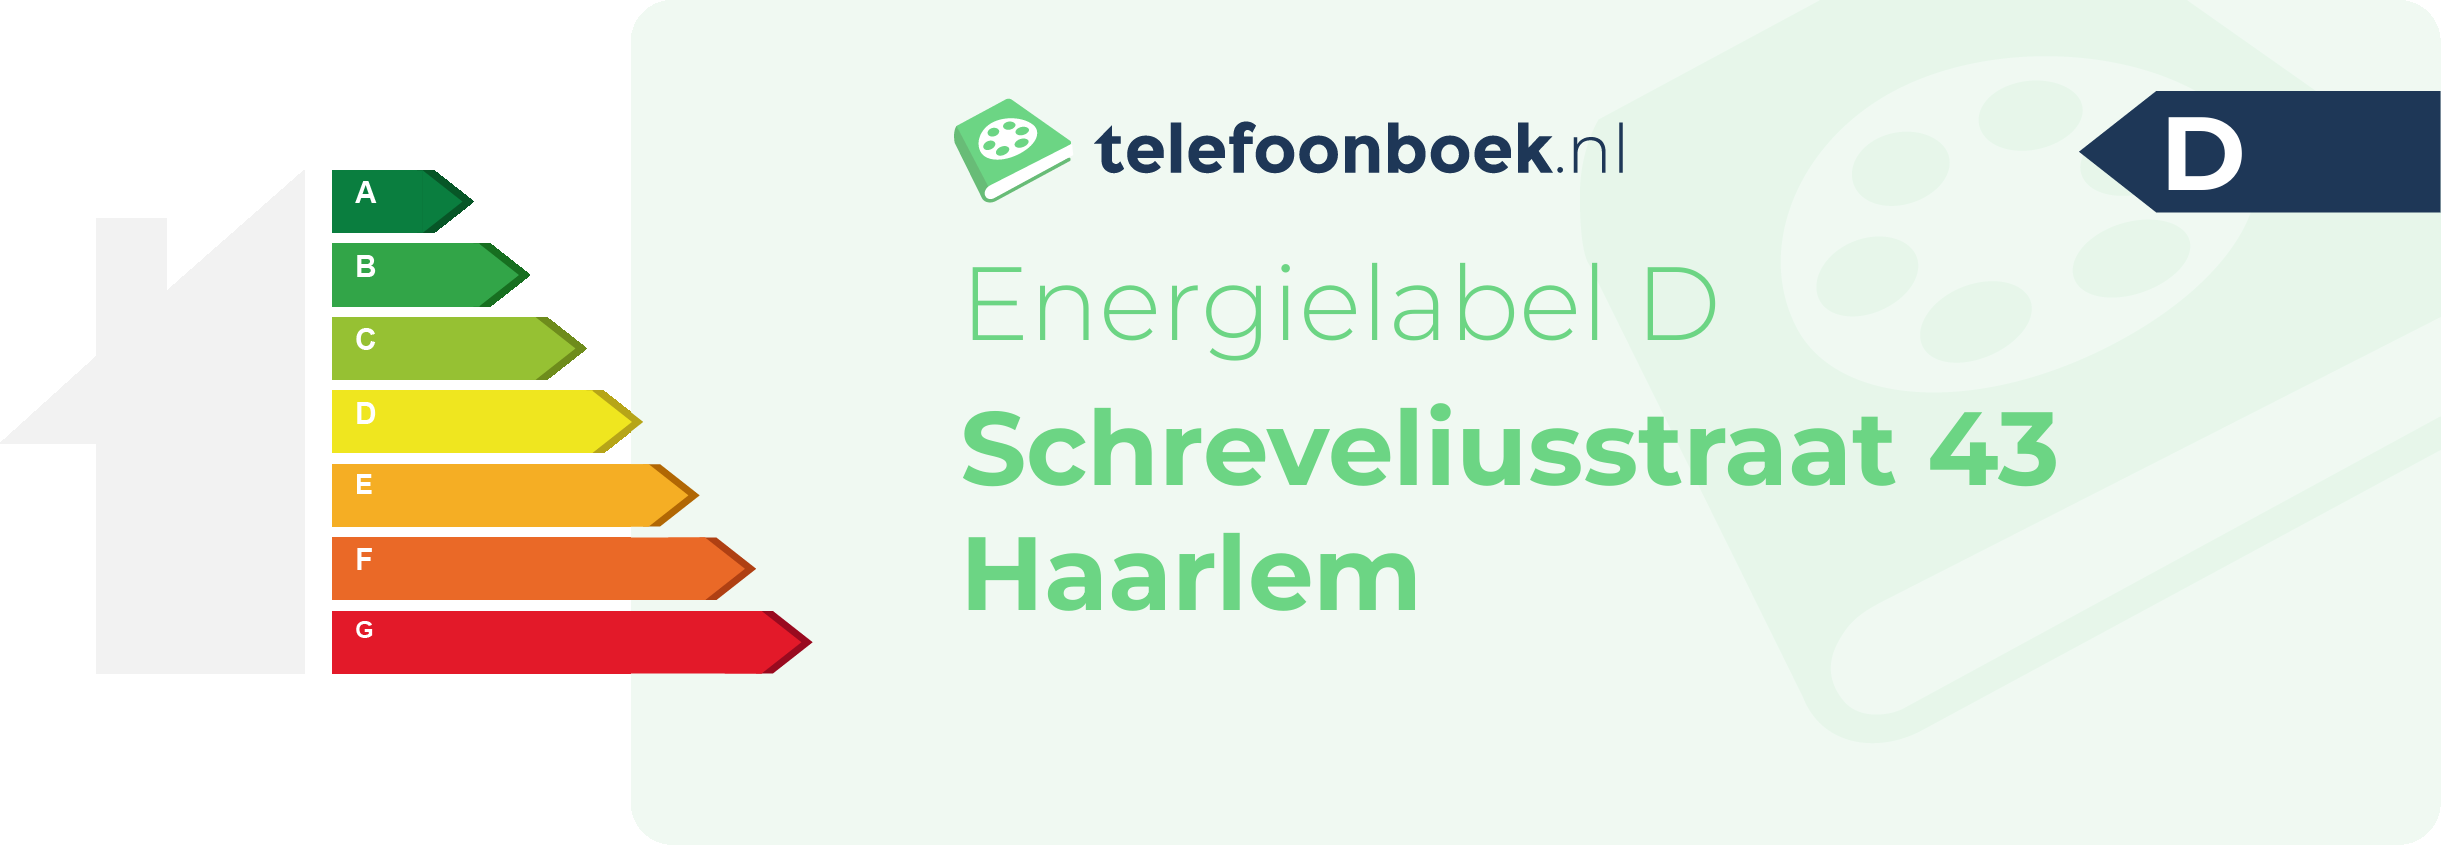 Energielabel Schreveliusstraat 43 Haarlem